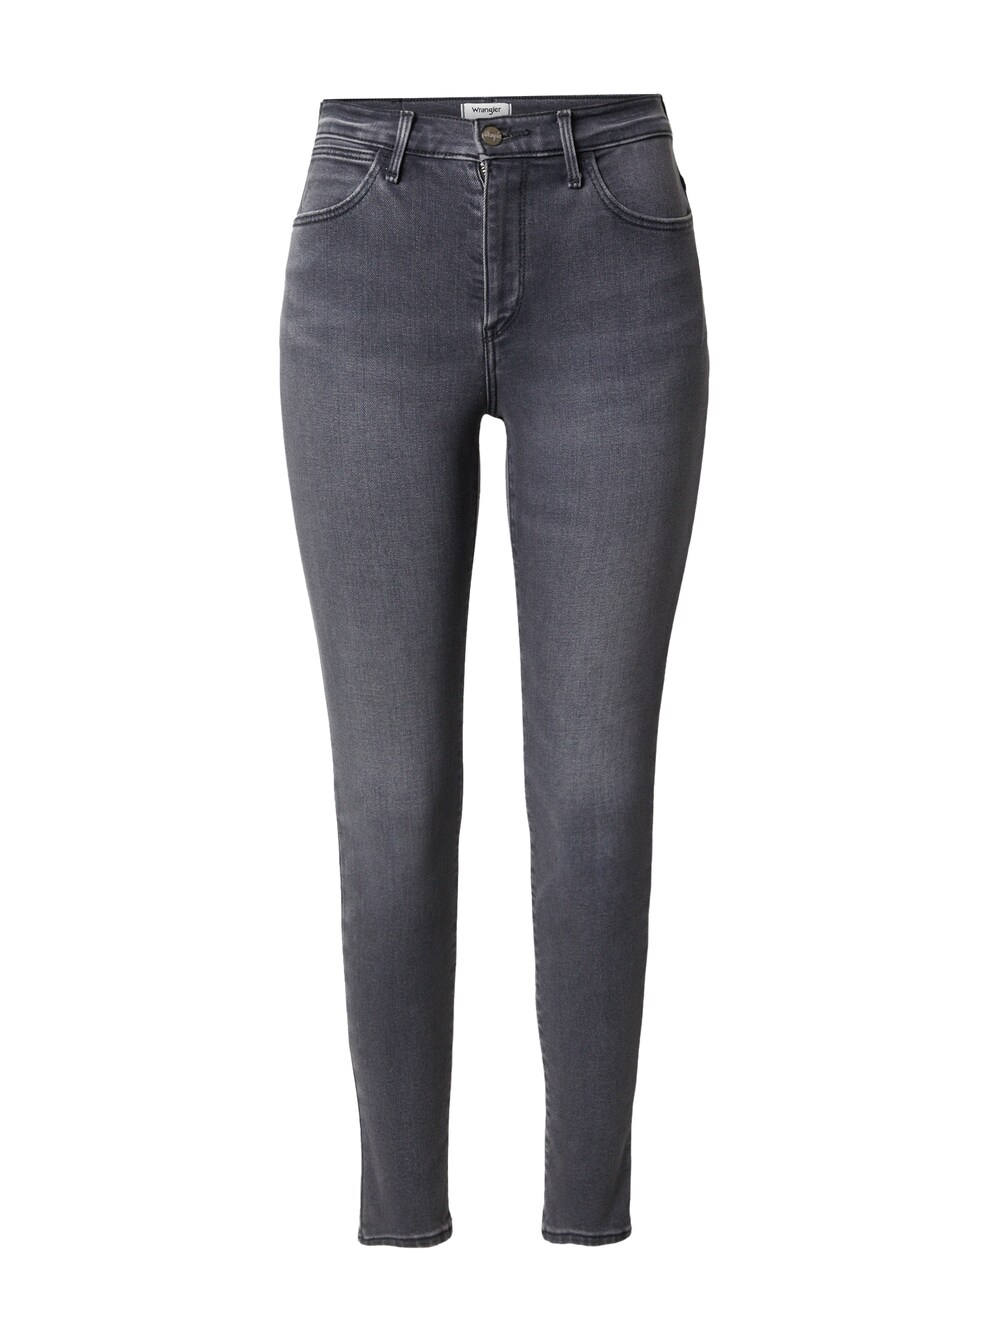 Узкие джинсы Wrangler, серый